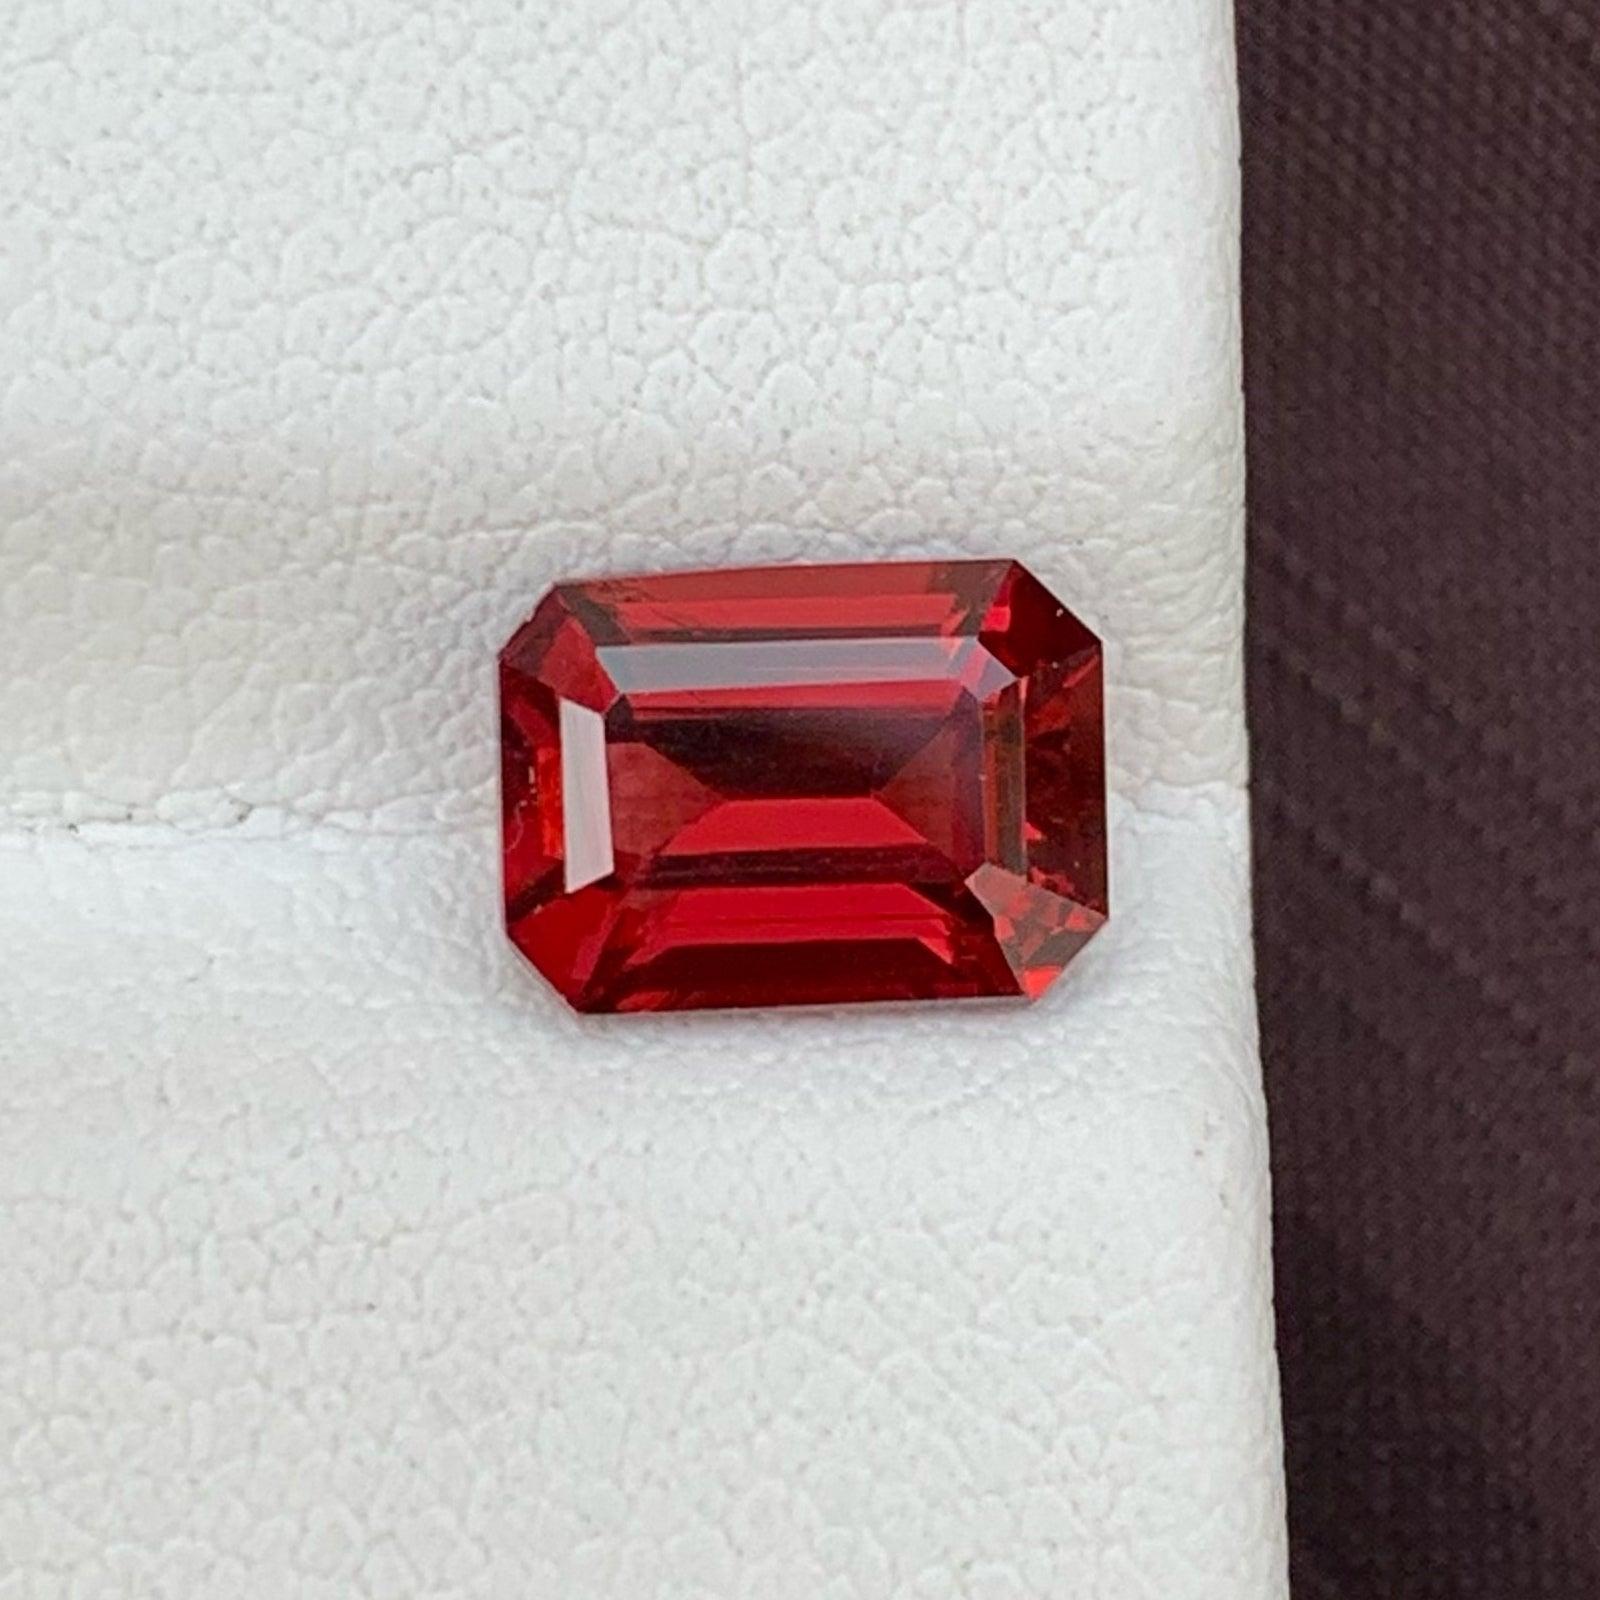 Emerald Cut Bright Red Garnet Loose Gemstone From Malawi 2.10 Carats Garnet Jewelry Fine Gem For Sale